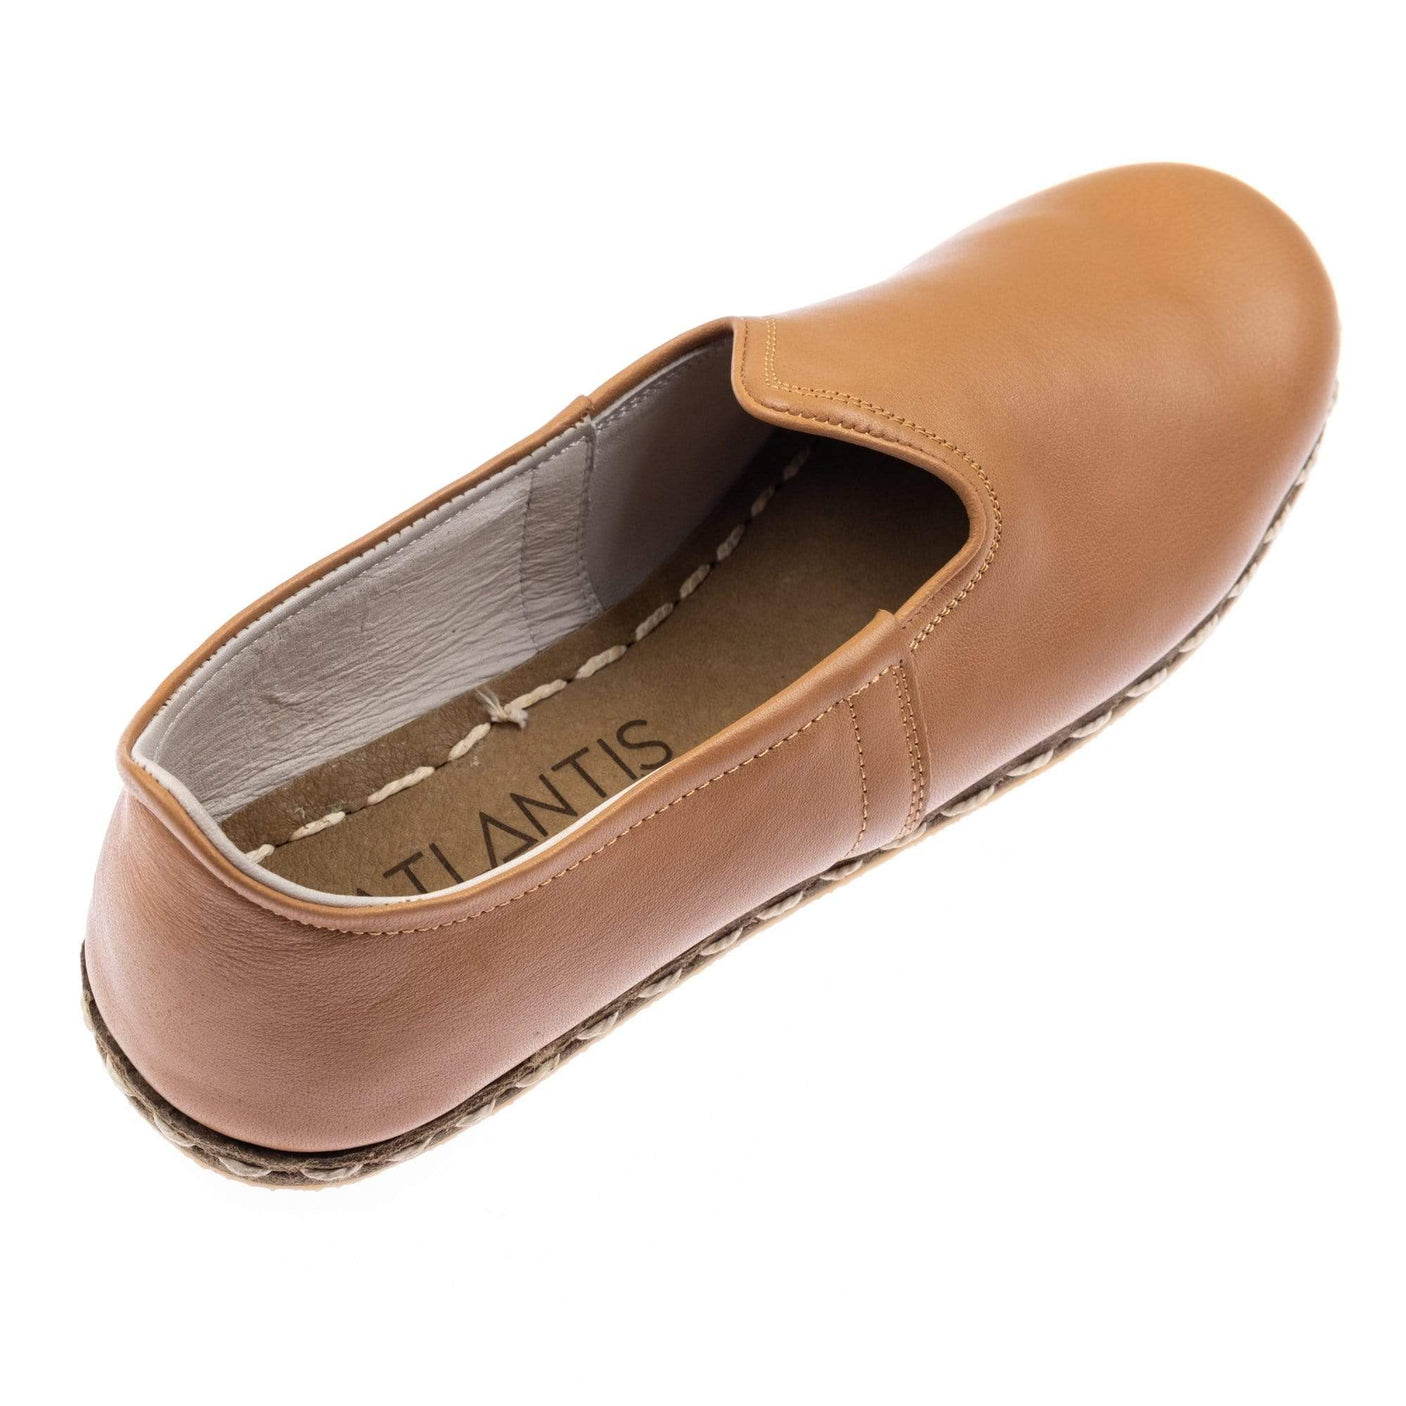 Kokosnussbraune Slip-On-Schuhe für Damen